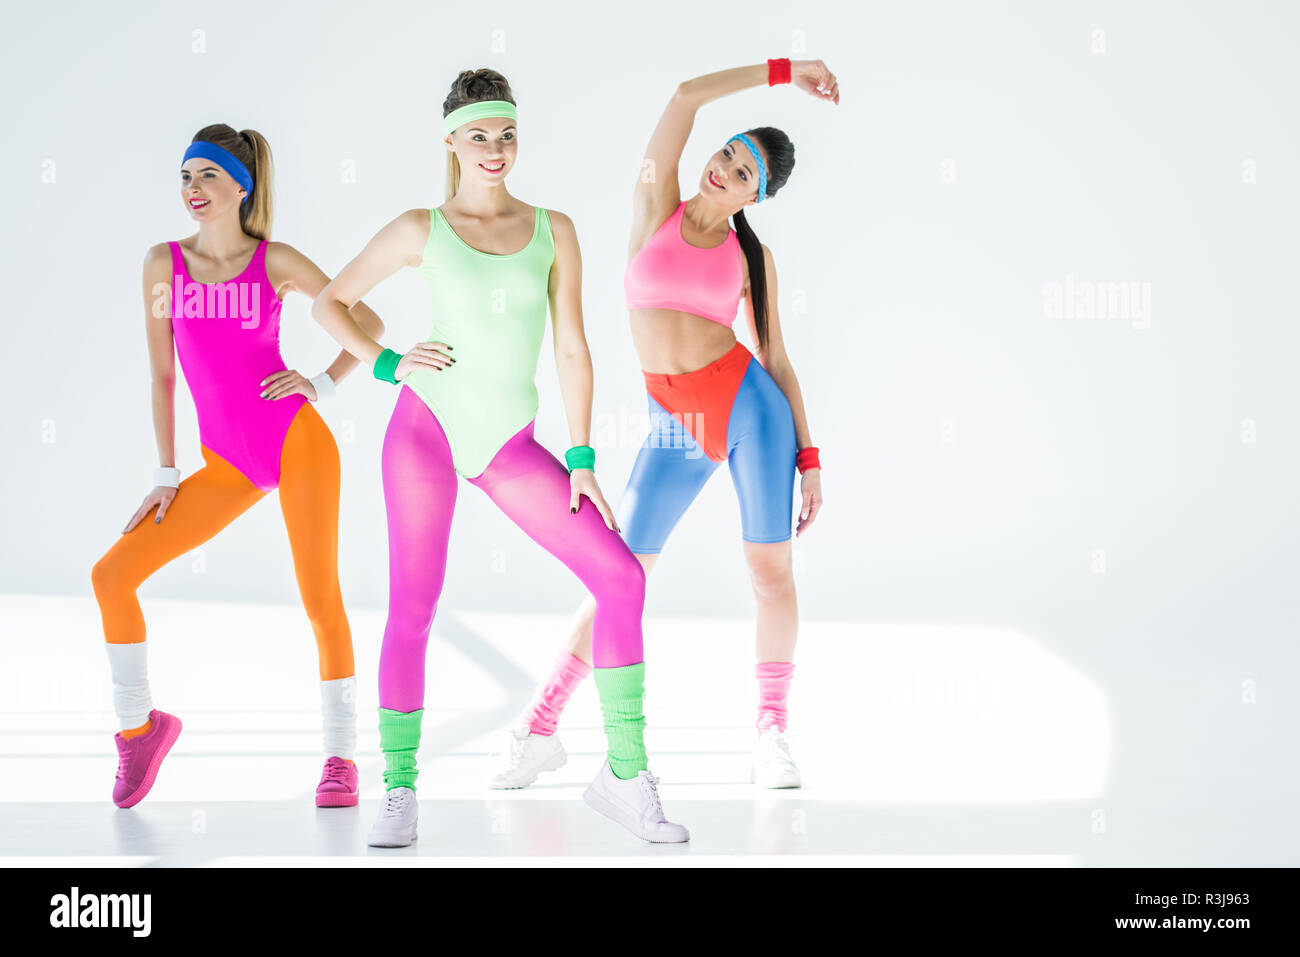 Schöne sportliche Mädchen im 80er Jahre Stil Sportswear zusammen trainieren  auf Grau Stockfotografie - Alamy